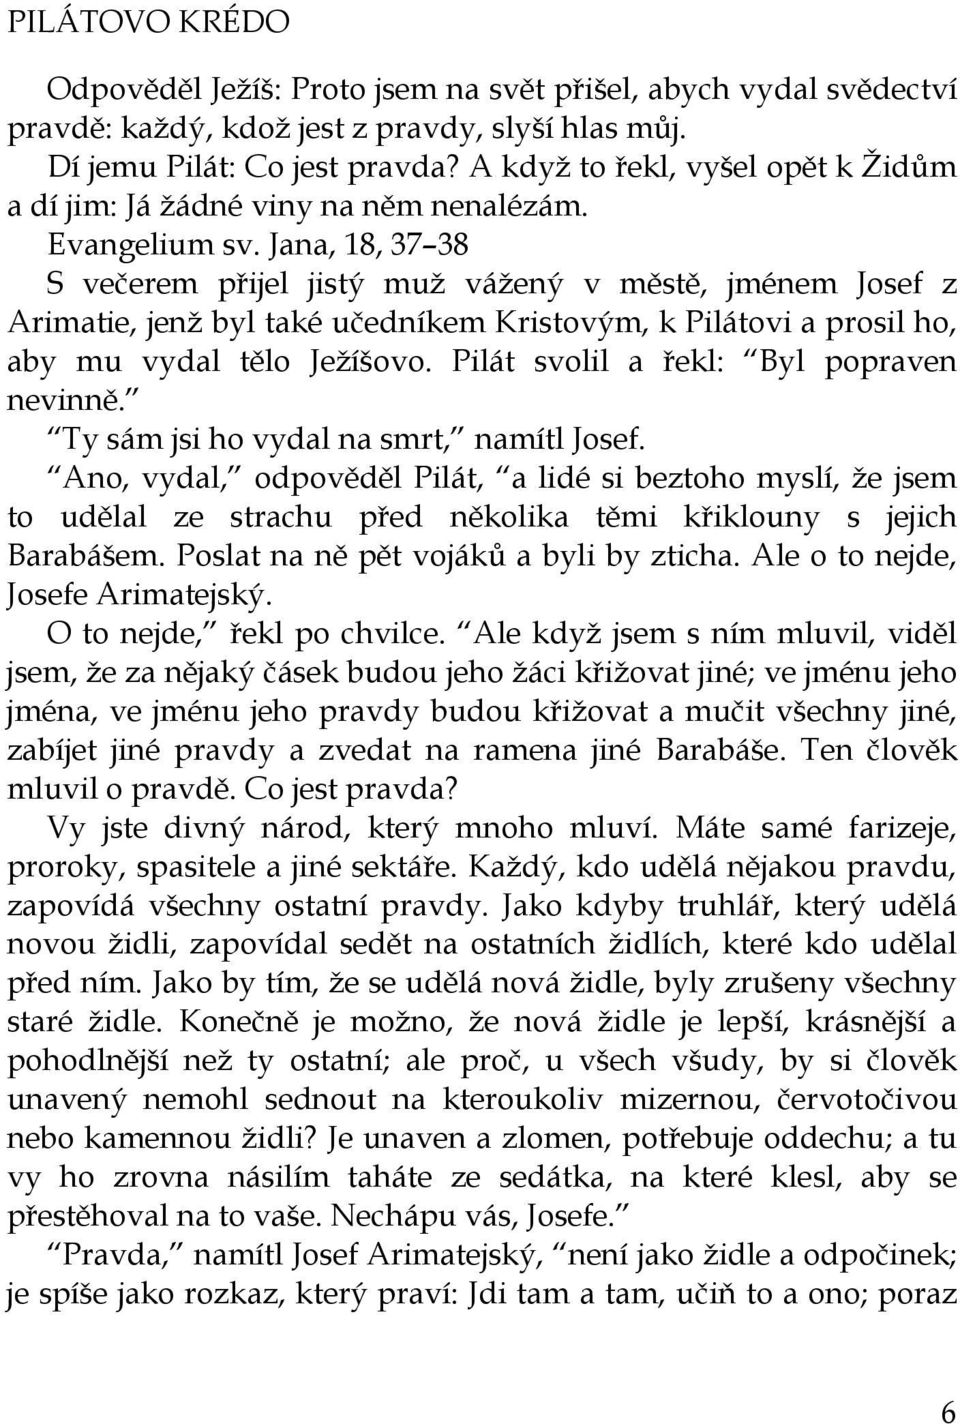 Karel Čapek MENŠÍ PRÓZY APOKRYFY, BAJKY, SATIRY, AFORISMY, PODPOVÍDKY - PDF  Stažení zdarma